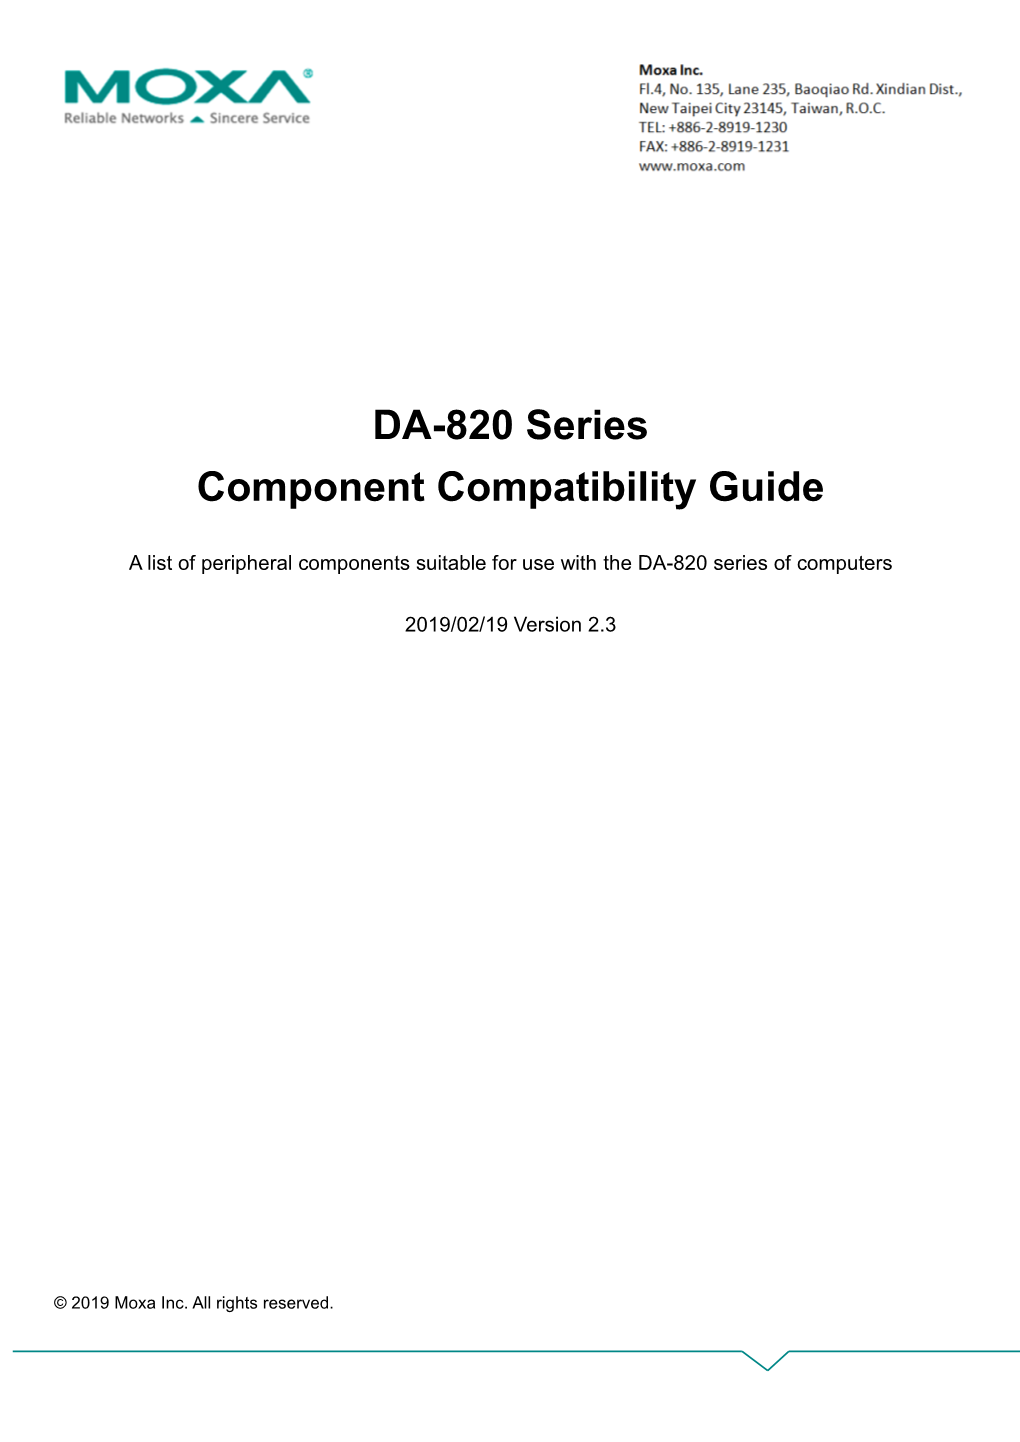 DA-820 Series Component Compatibility Guide